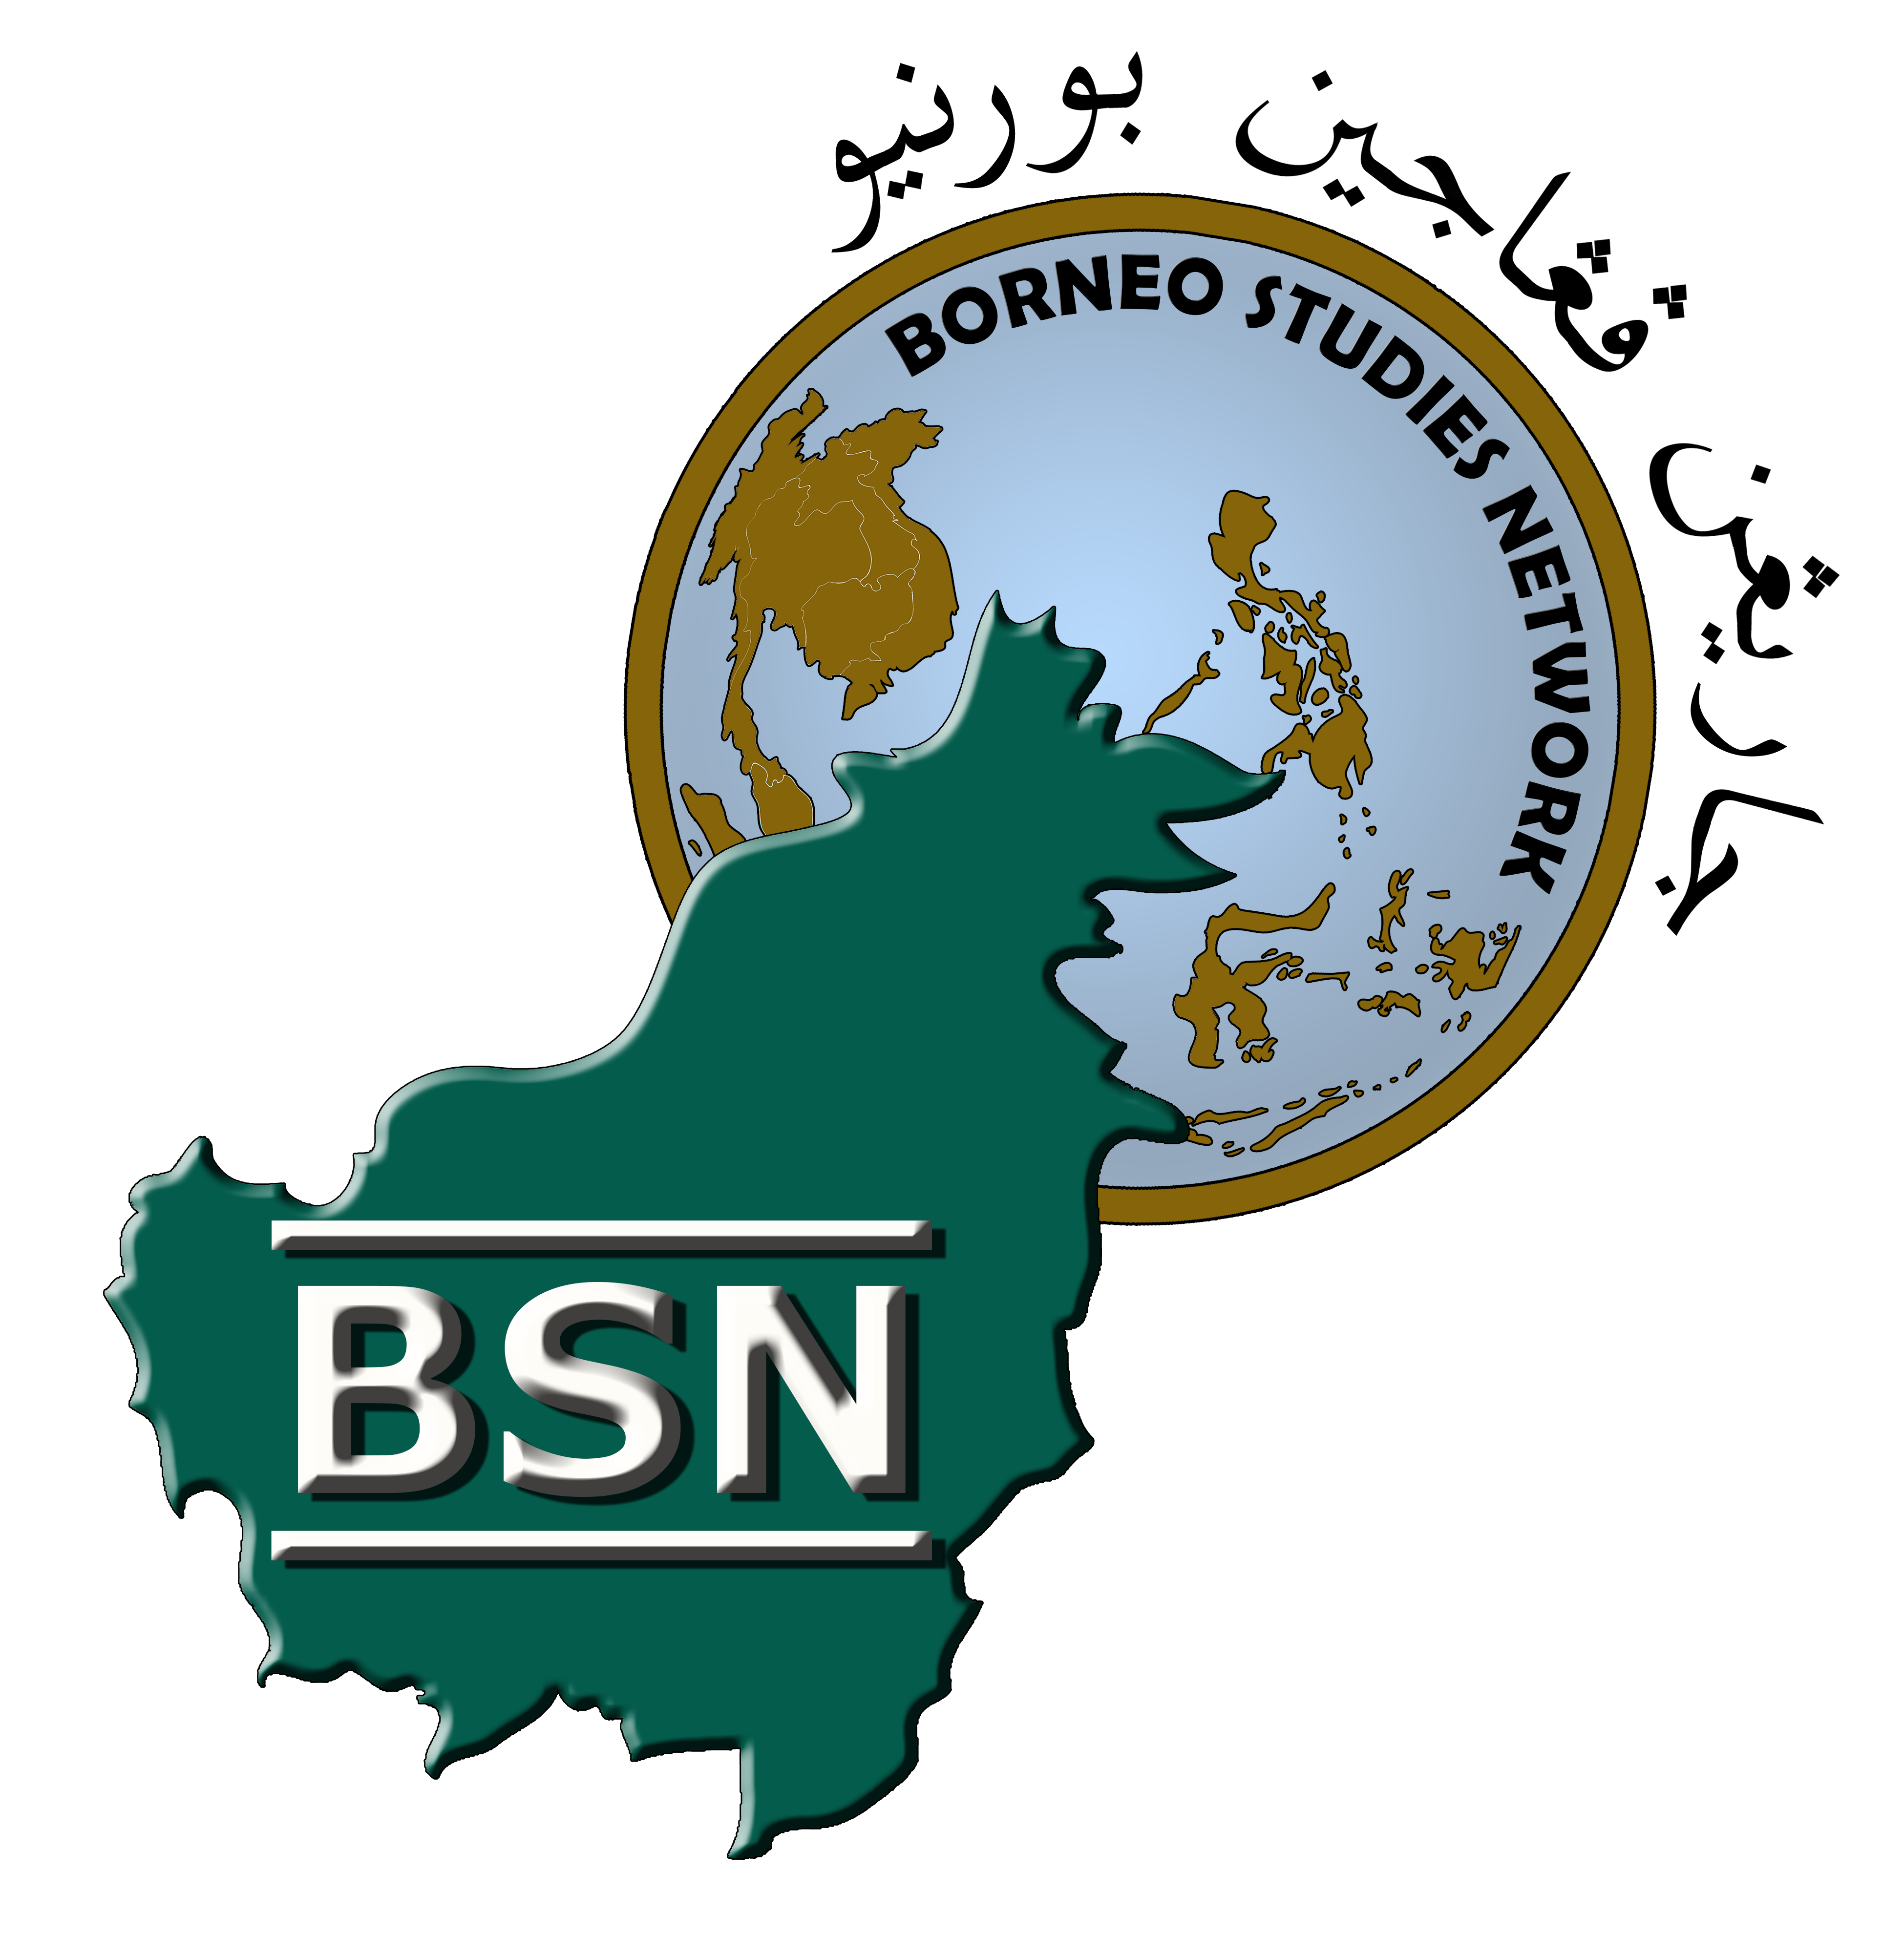 Borneo Studies Network